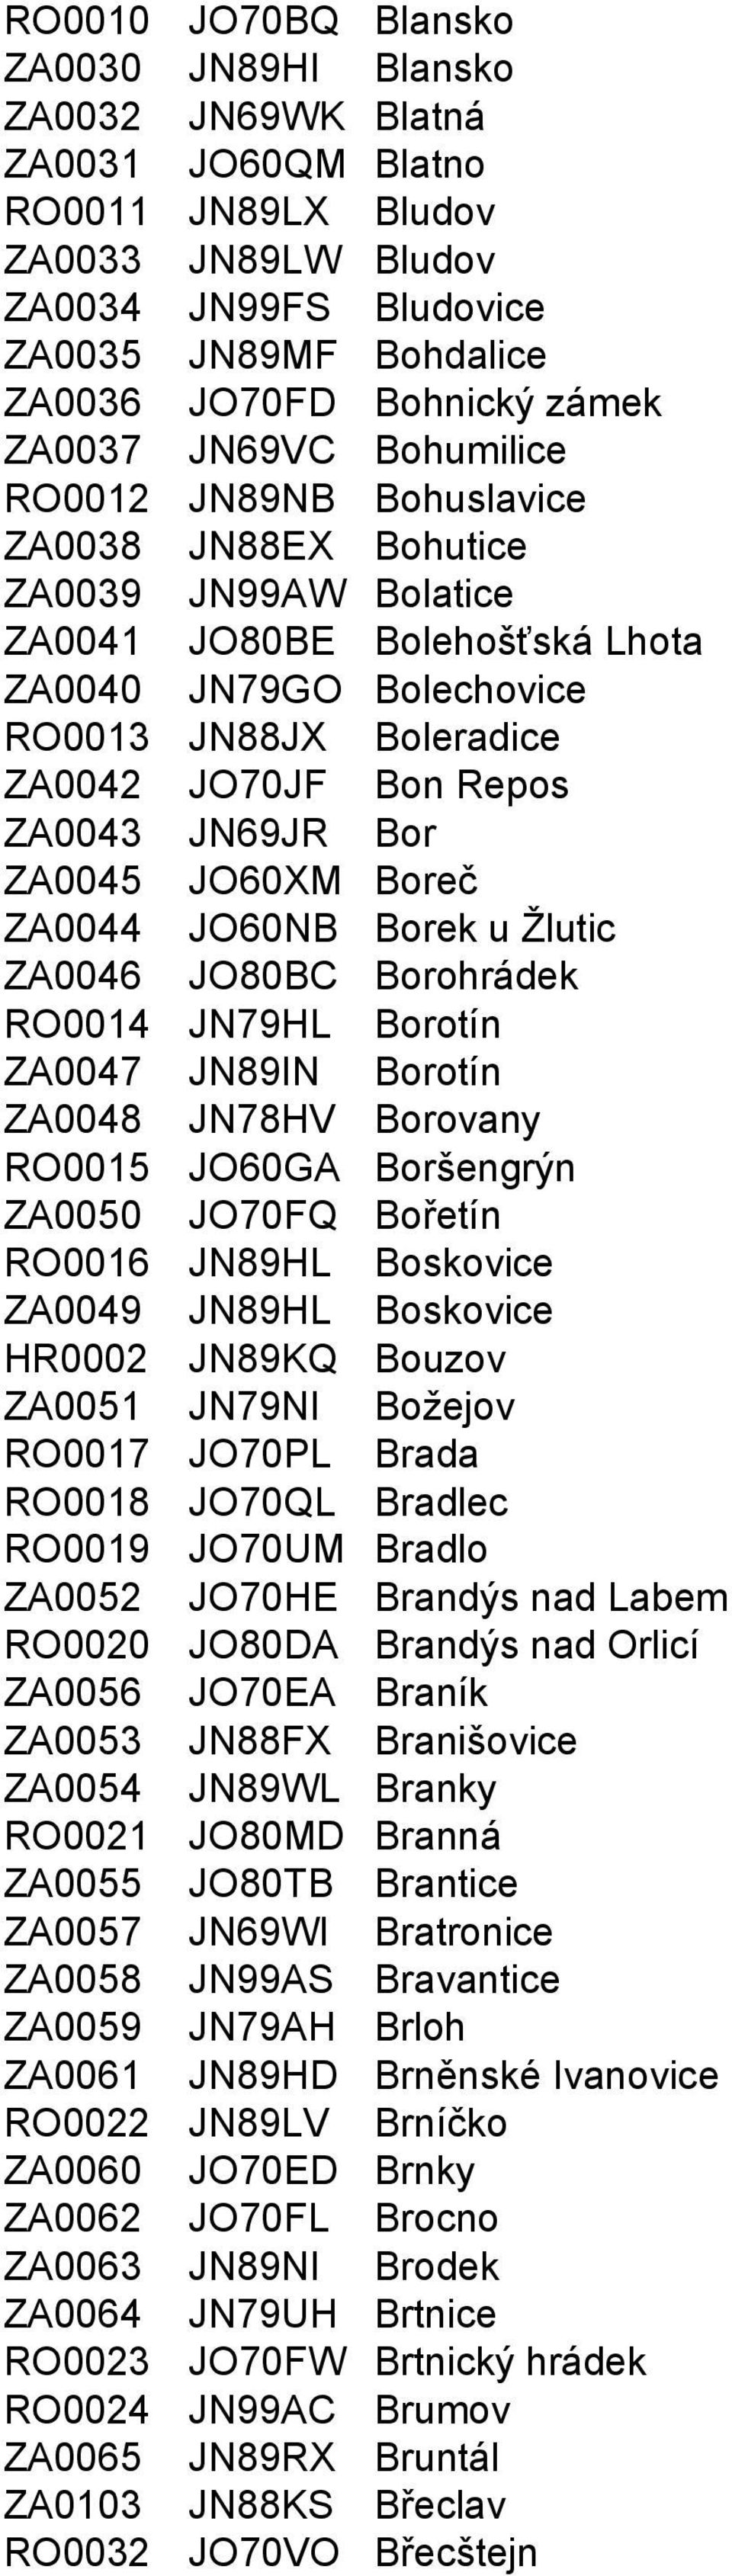 Bon Repos ZA0043 JN69JR Bor ZA0045 JO60XM Boreč ZA0044 JO60NB Borek u Žlutic ZA0046 JO80BC Borohrádek RO0014 JN79HL Borotín ZA0047 JN89IN Borotín ZA0048 JN78HV Borovany RO0015 JO60GA Boršengrýn